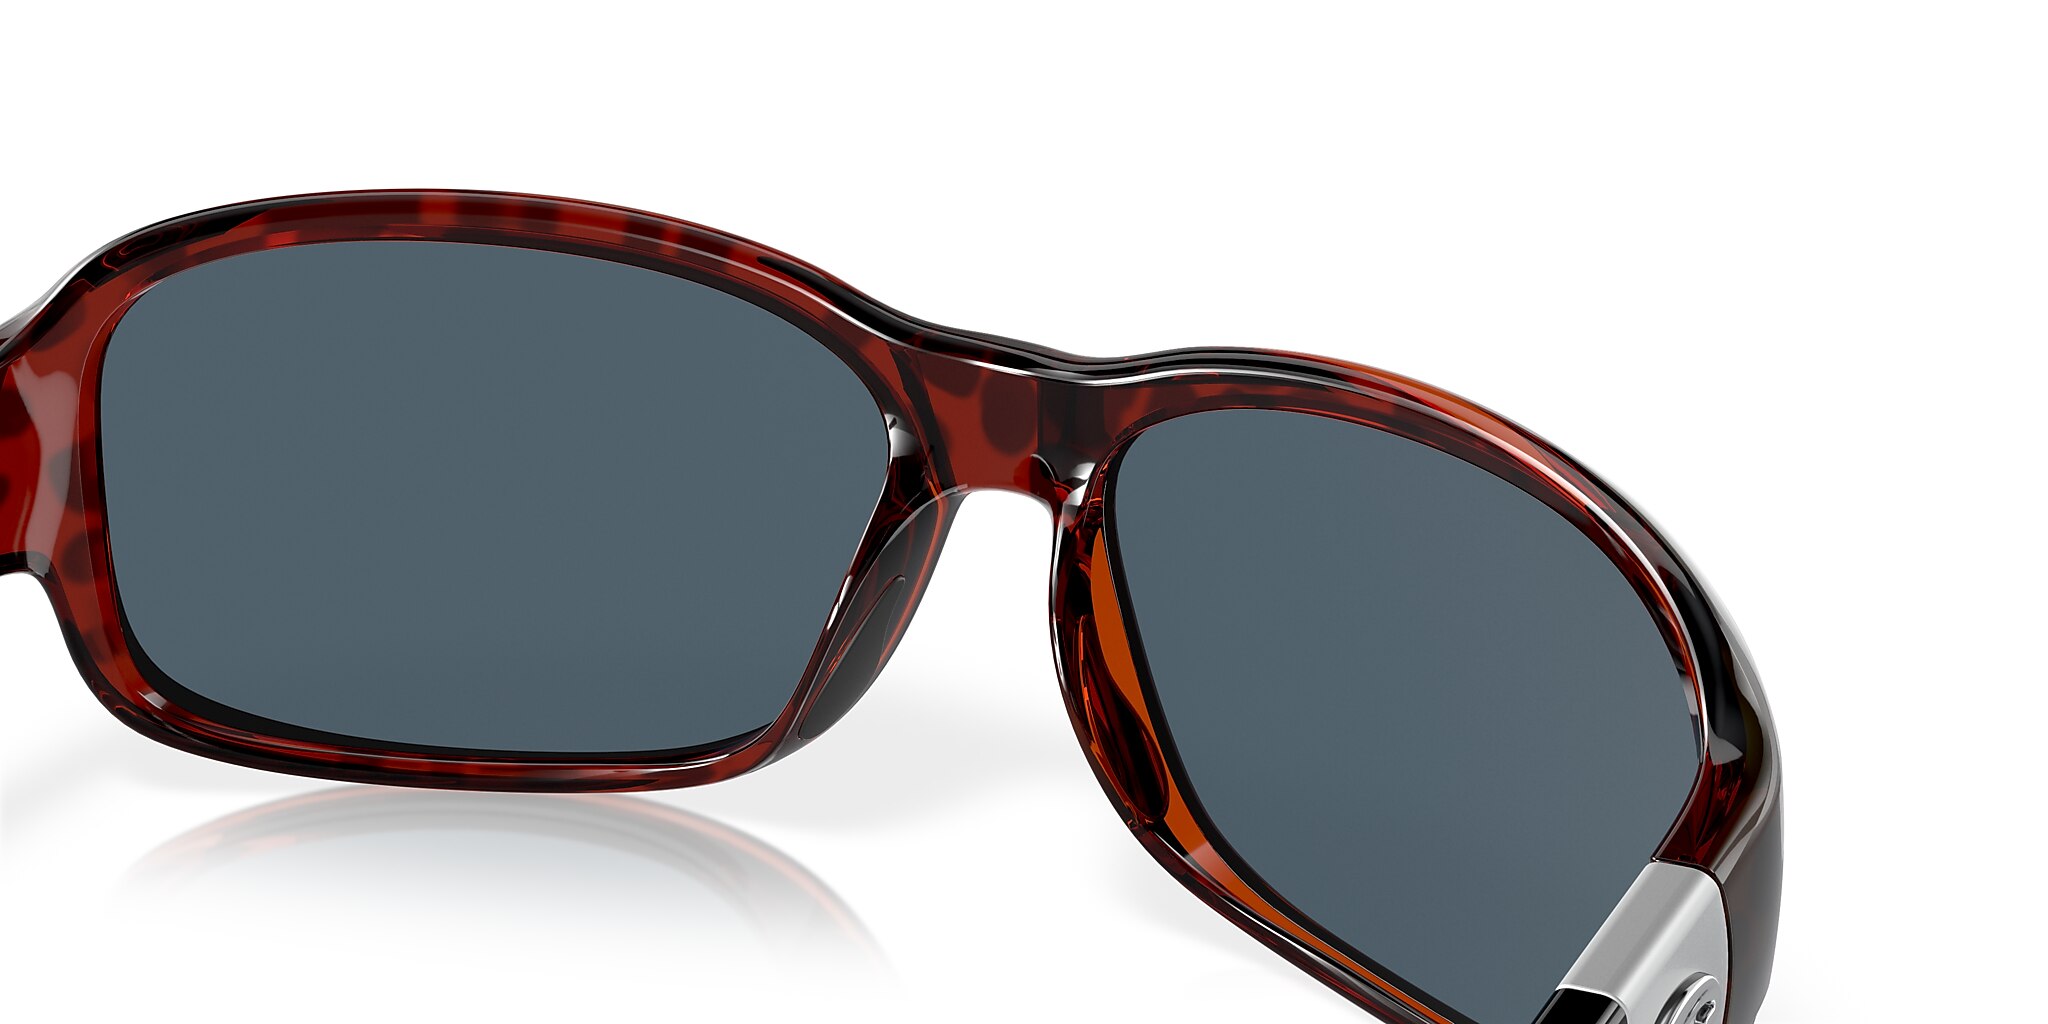 Inlet Polarized Sunglasses in Gray | Costa Del Mar®